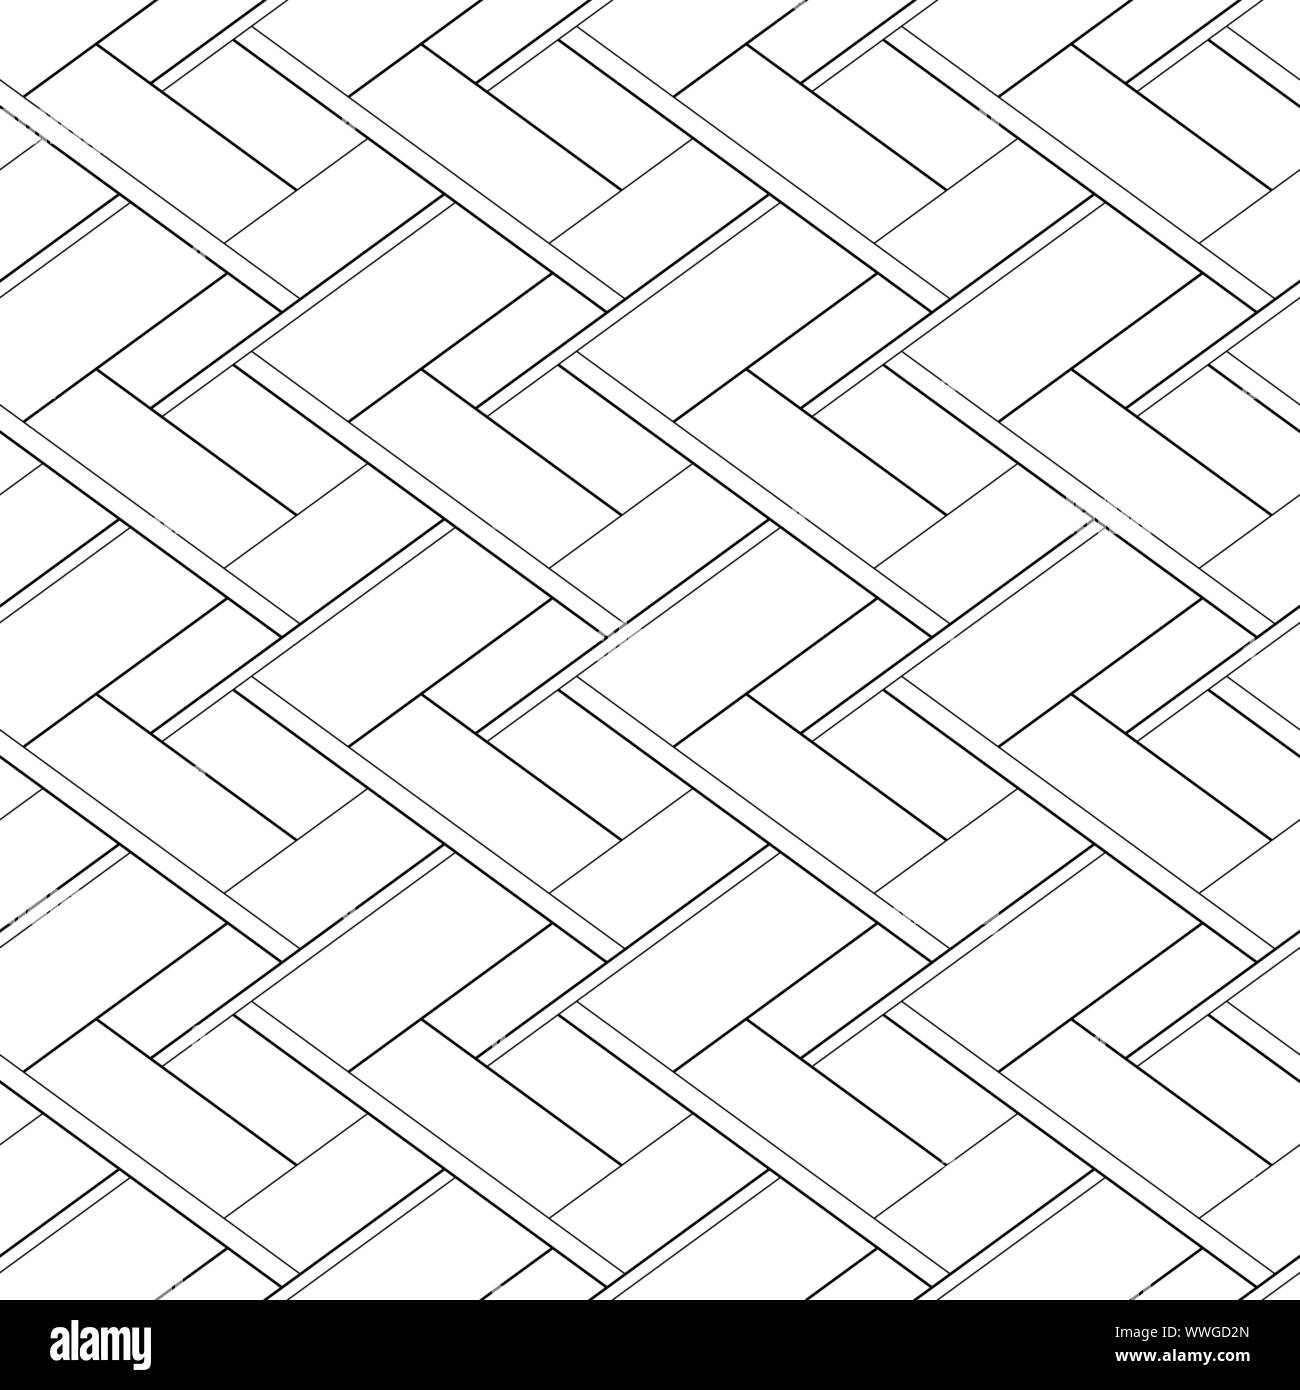 Zusammenfassung nahtlose Muster mit Fadenkreuz. Vector schwarz, Hintergrund weiß Stock Vektor